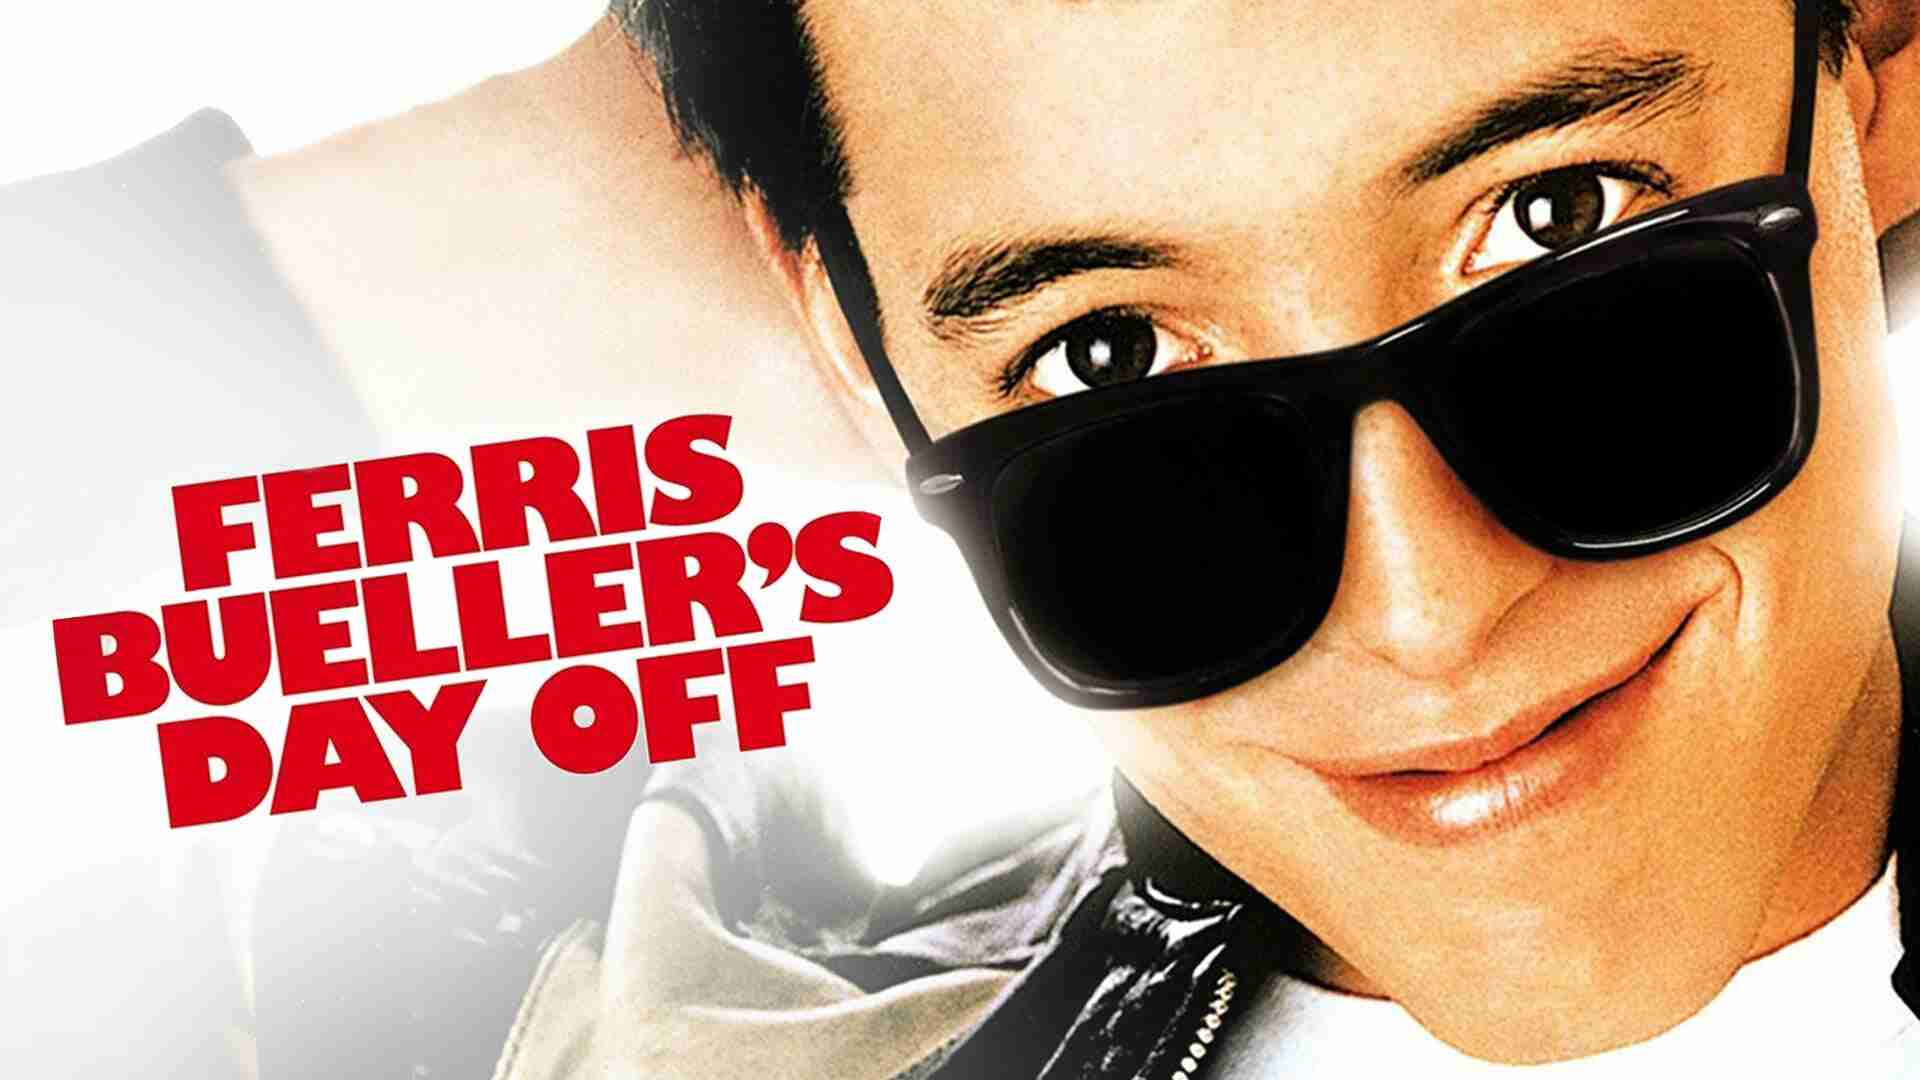  Ferris Bueller's Day Off is een Amerikaanse komische film uit 1986, geregisseerd door John Hughes. De film volgt de avonturen van de populaire en charismatische tiener Ferris Bueller, die besluit om een dagje vrij te nemen van school en samen met zijn beste vriend en vriendin de stad Chicago te verkennen. Terwijl ze genieten van hun dagje uit, worden ze achtervolgd door de 